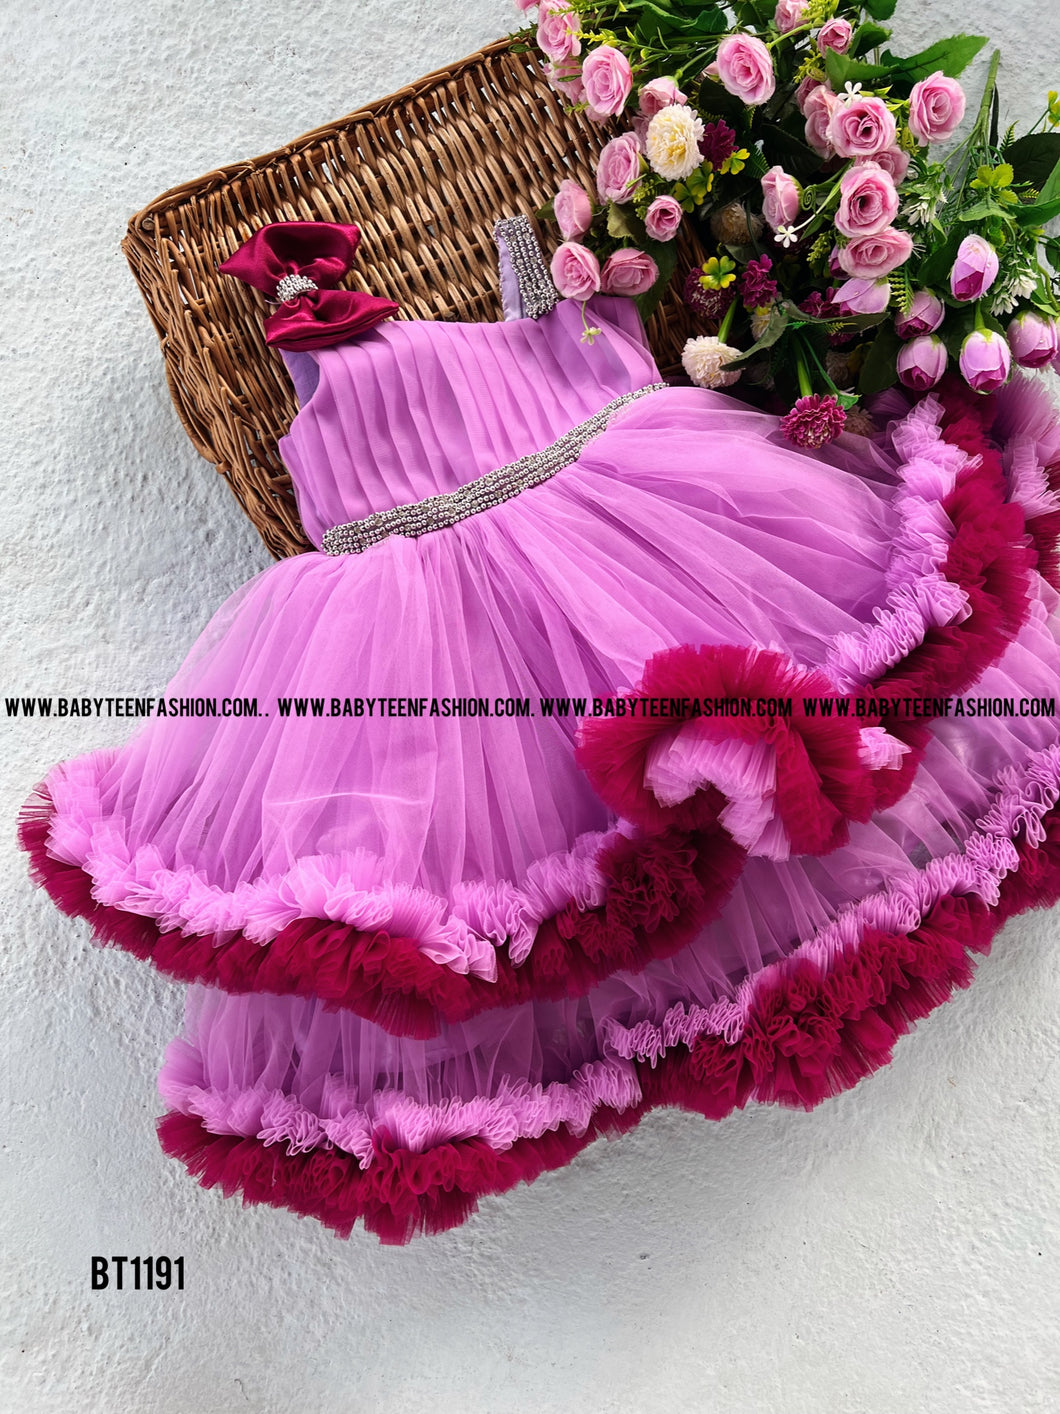 BT1191 Lavender Purple Double Ruffled Partywear Frock